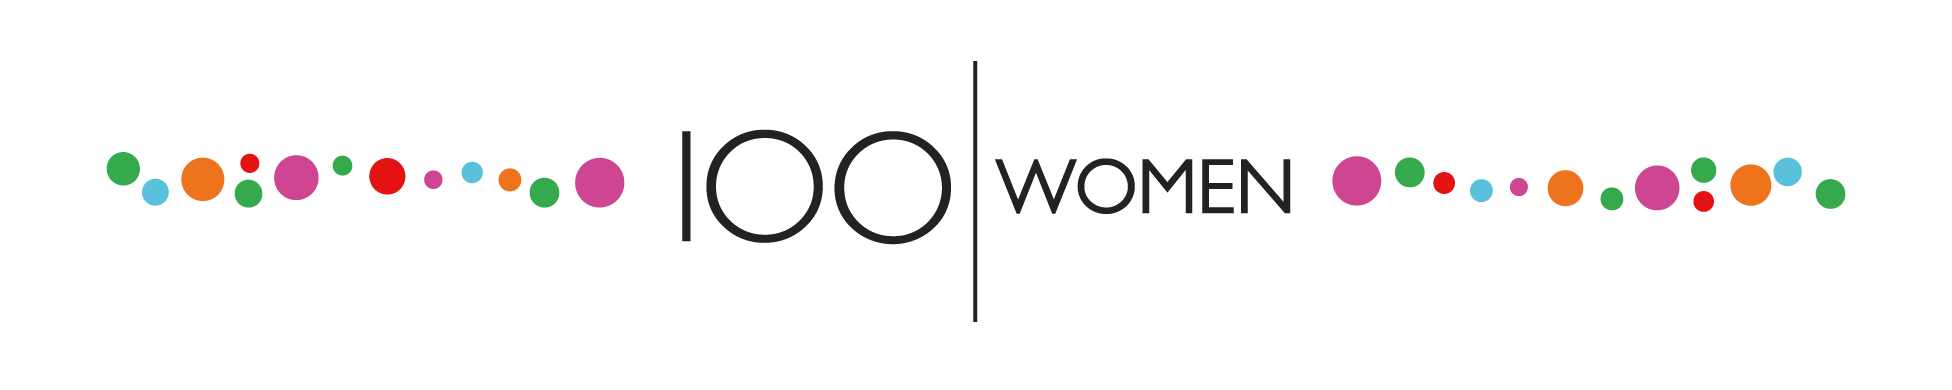 100 женщин - Всемирная служба Би-би-си